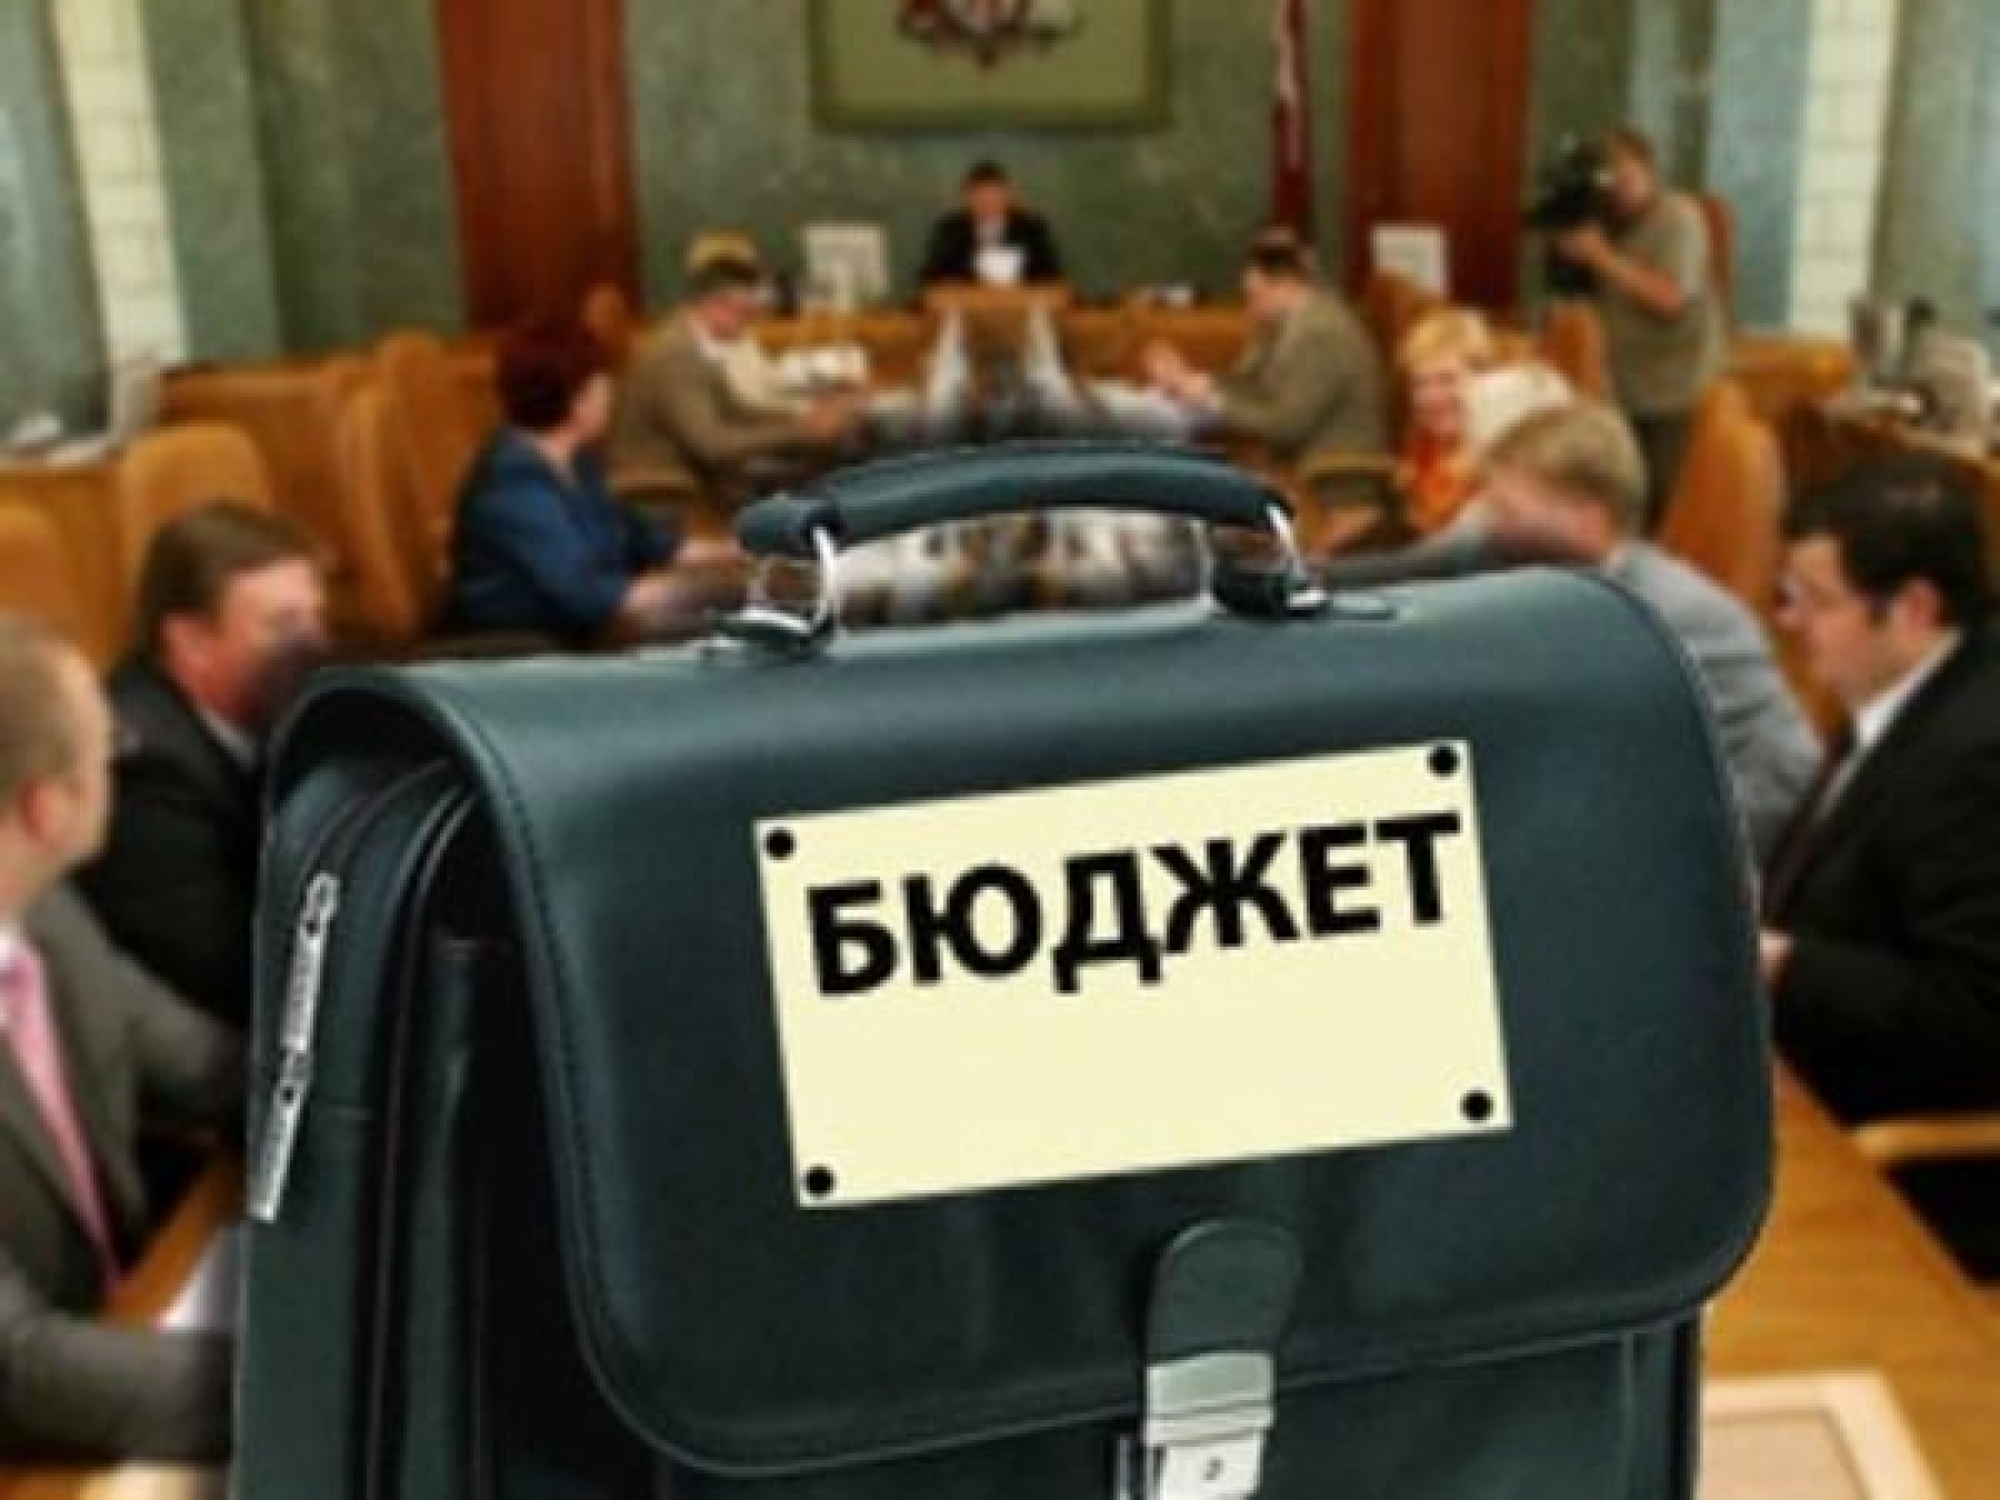 Кабинет министров Украины предлагает Верховной Раде принять проект государственного бюджета на 2016 год с дефицитом в 3,7% ВВП, что в абсолютных цифрах составляет 84 млрд грн.
